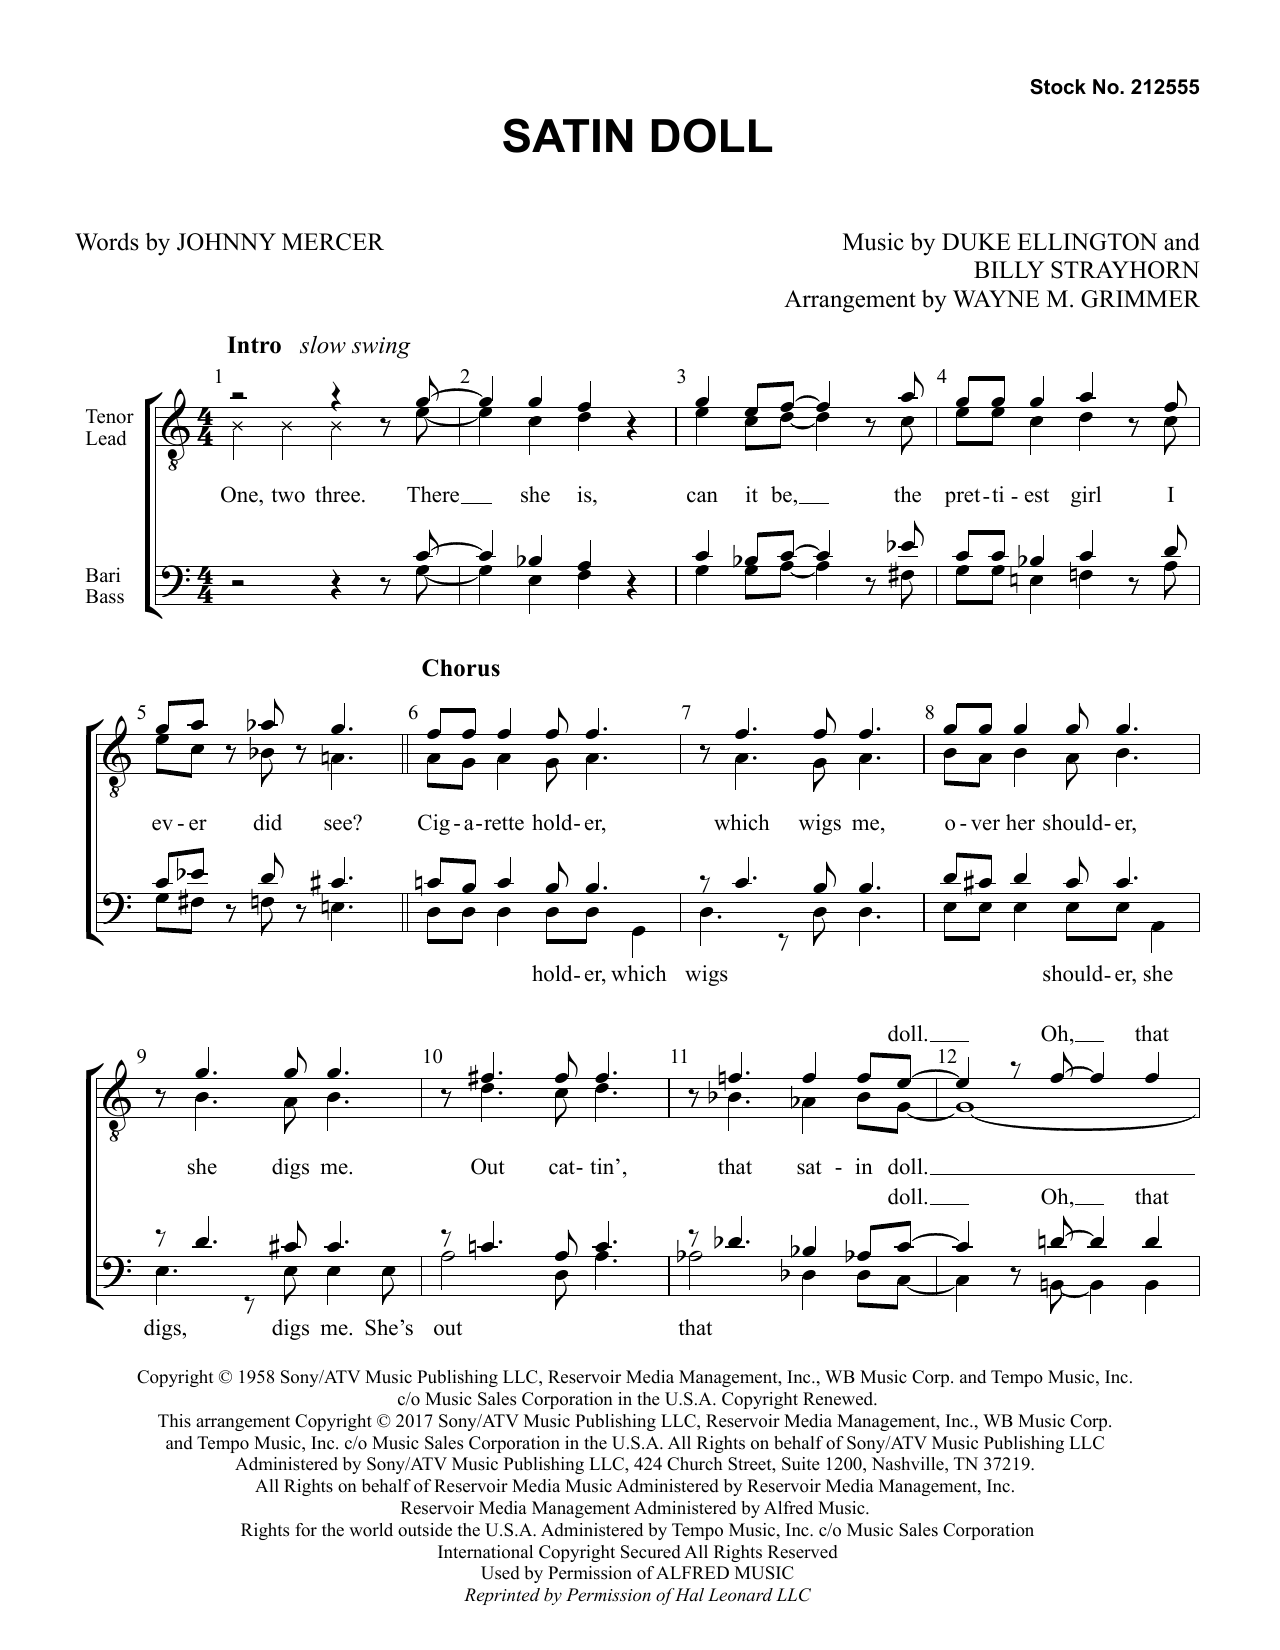 Download Johnny Mercer Satin Doll (arr. Wayne Grimmer) Sheet Music